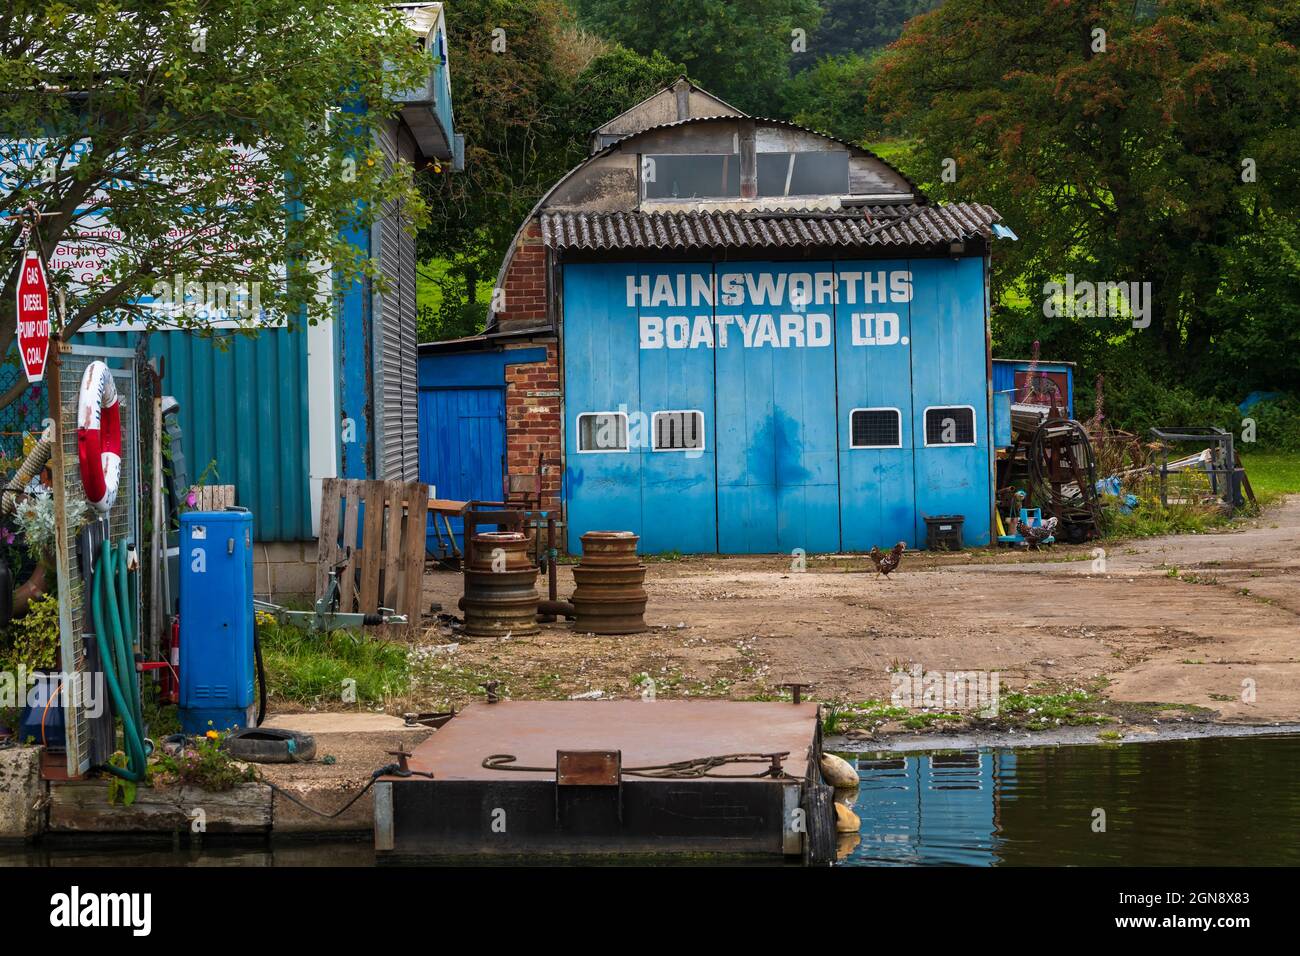 Hainsworth's Boatyard Ltd Sheds (Reparatur und Service, Heizbedarf, Kraftstoffverkauf) - Leeds und Liverpool Canal, Bingley West Yorkshire England, Großbritannien. Stockfoto